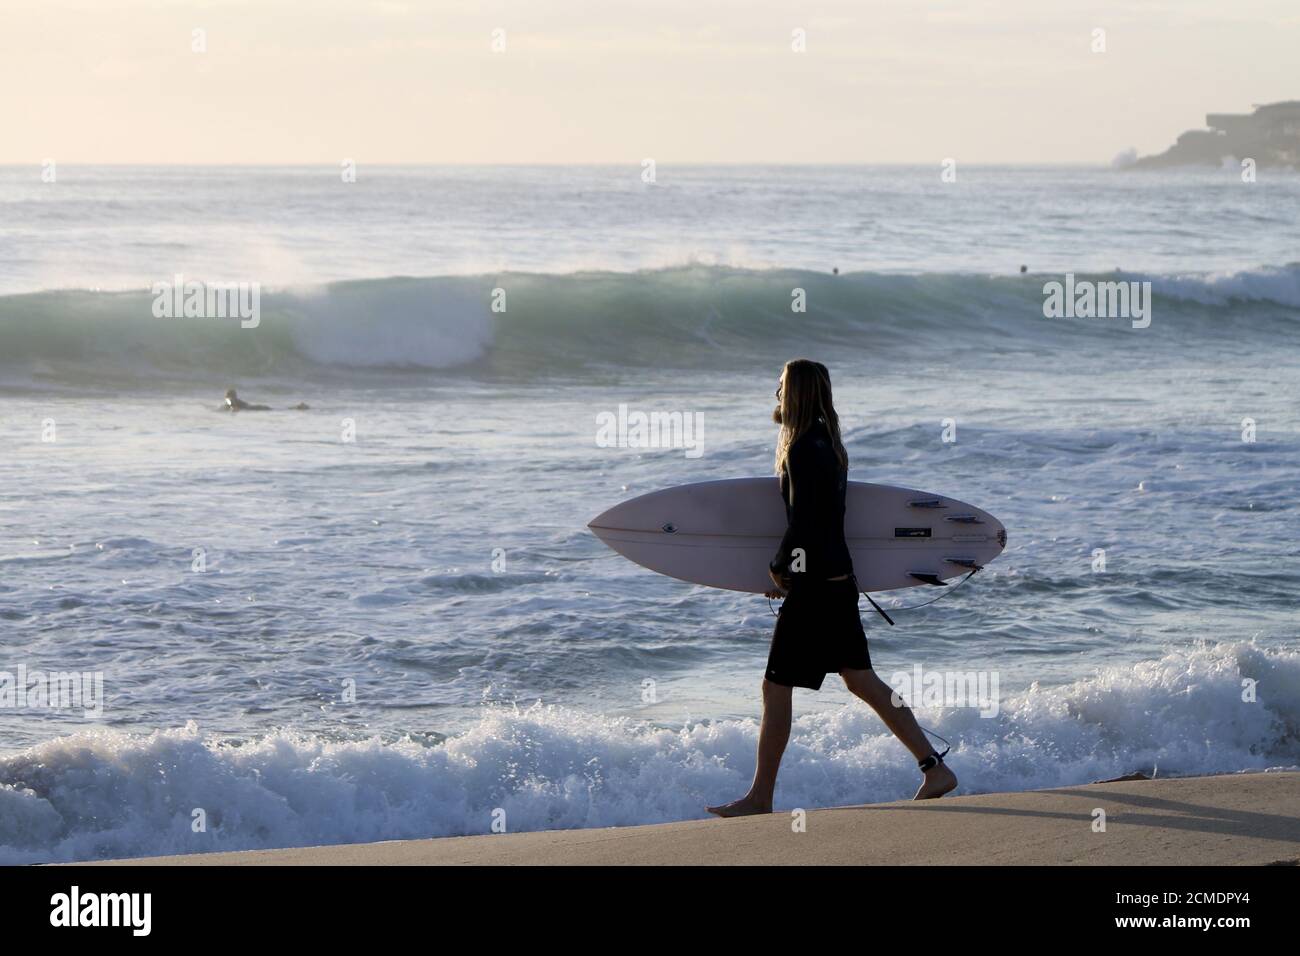 MAROUBRA, AUSTRALIA - Dic 05, 2015: Felice surfista che guarda come gesù che va in acqua al mattino lightMaroubra, nuovo galles del Sud, australia Foto Stock